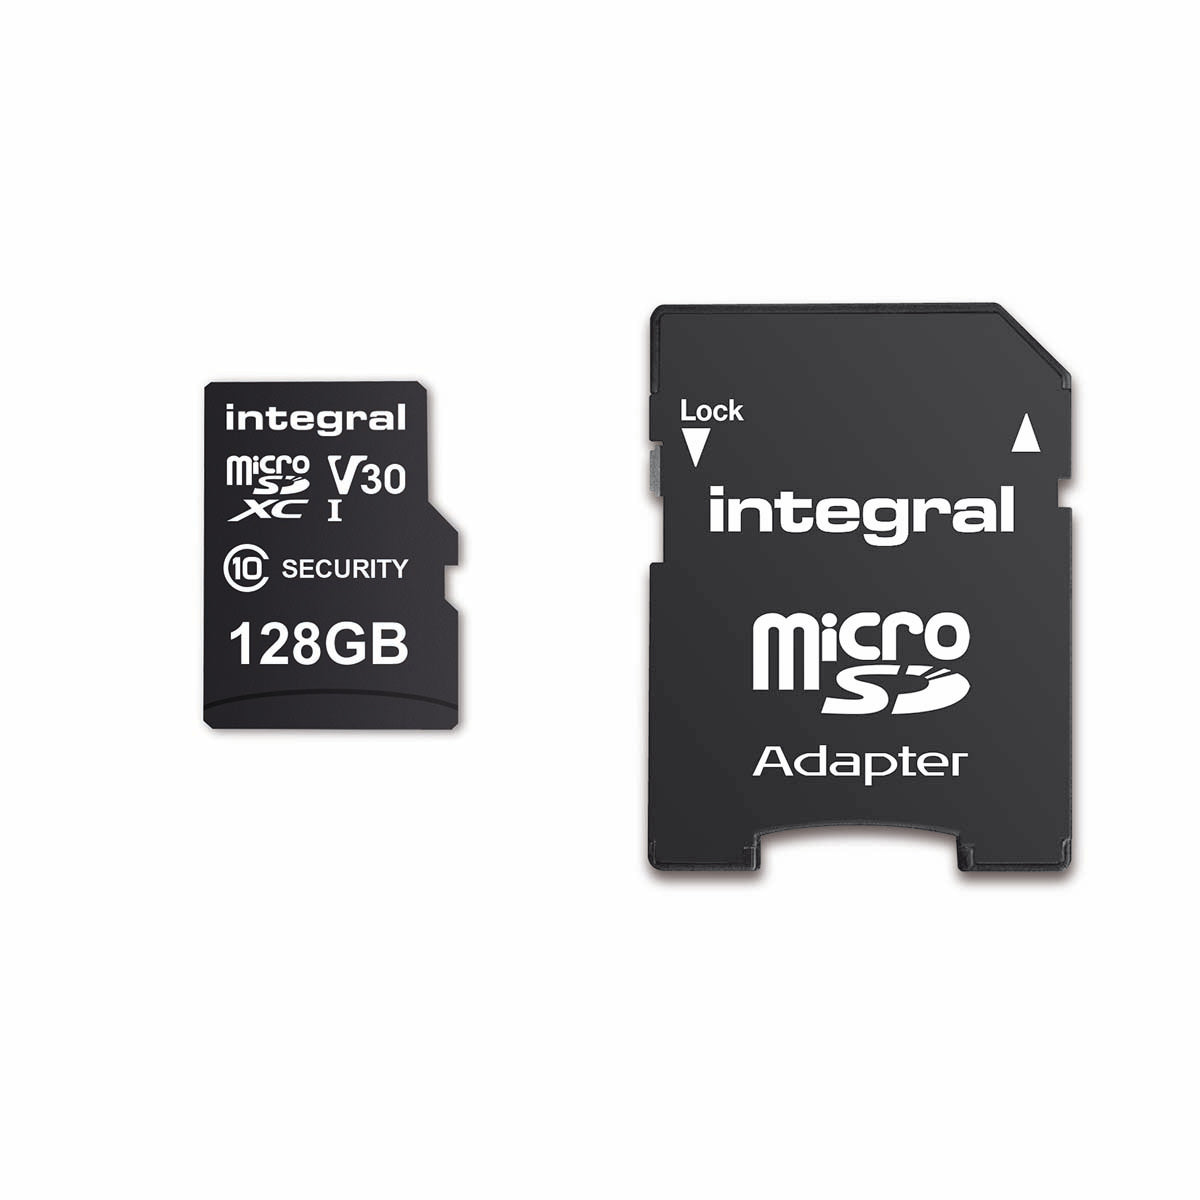 128 GB Überwachungskamera microSD-Karte für Dashcams, Home Cams, CCTV, Body Cams & Drohnen